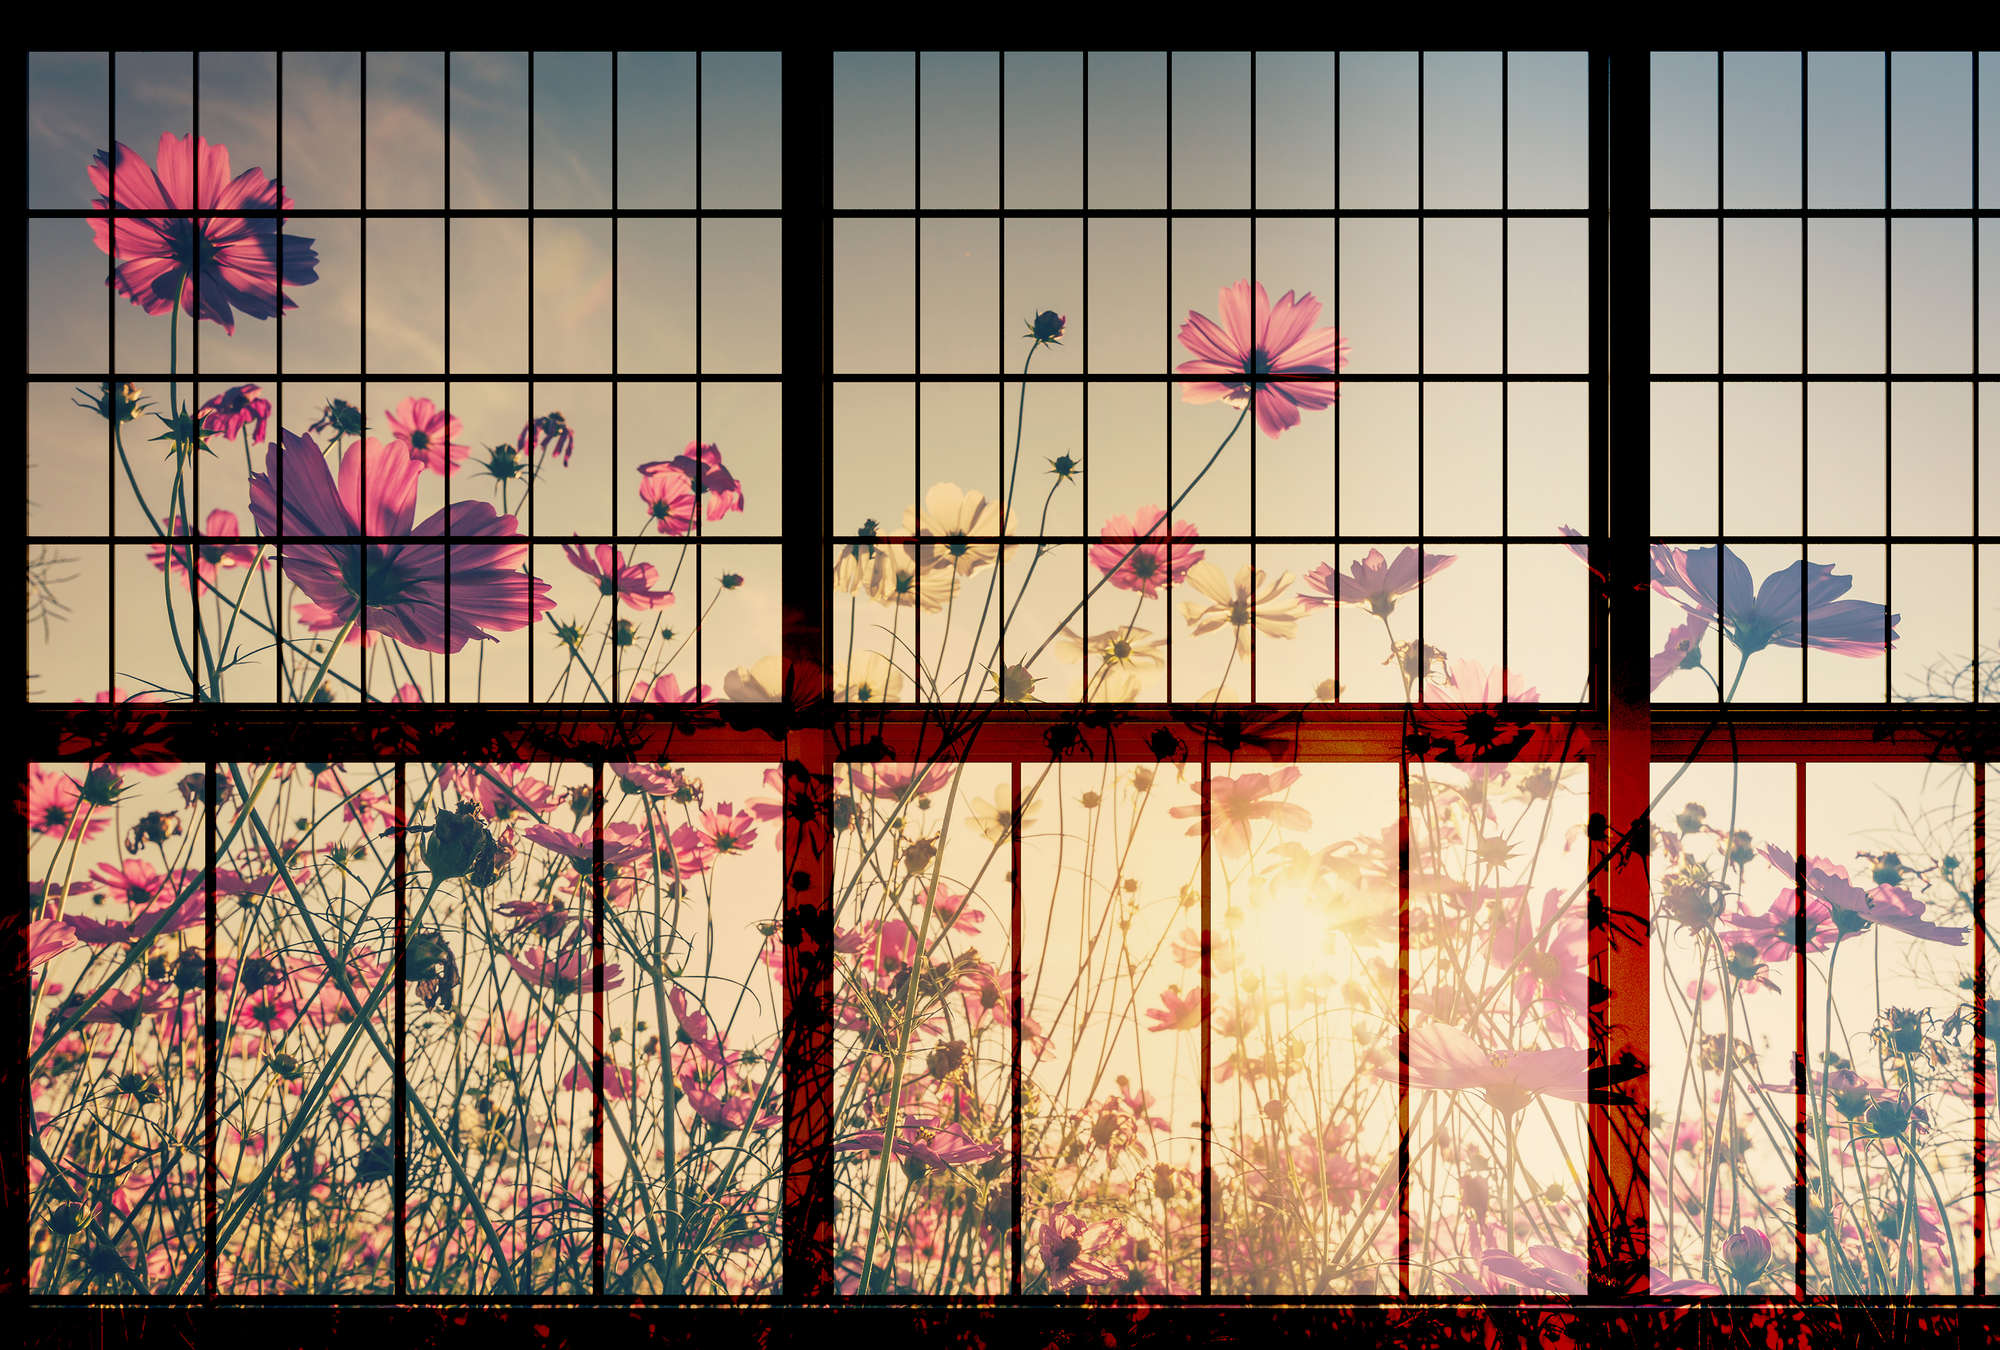             Meadow 1 - Papel pintado Muntin para ventanas con prado de flores - Verde, Rosa | Liso mate
        